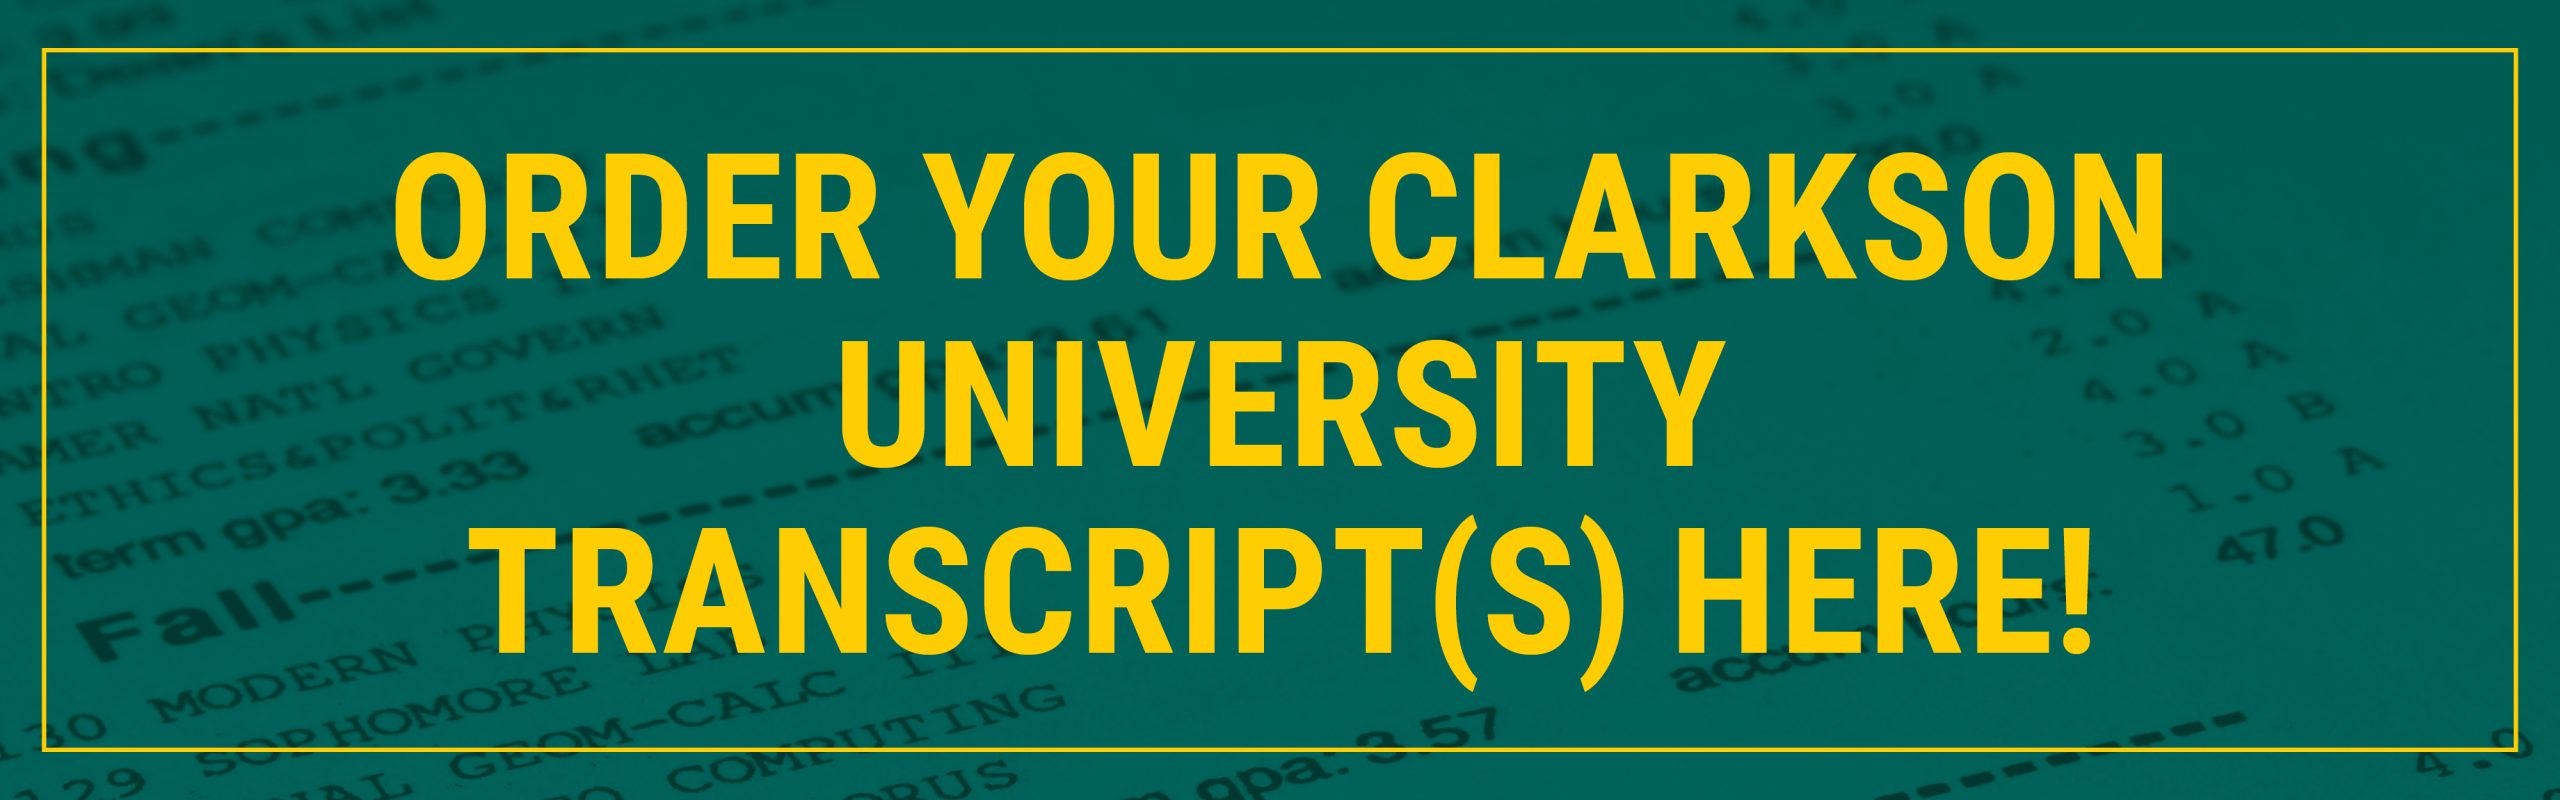 Order your Clarkson University Transcript(s) here!